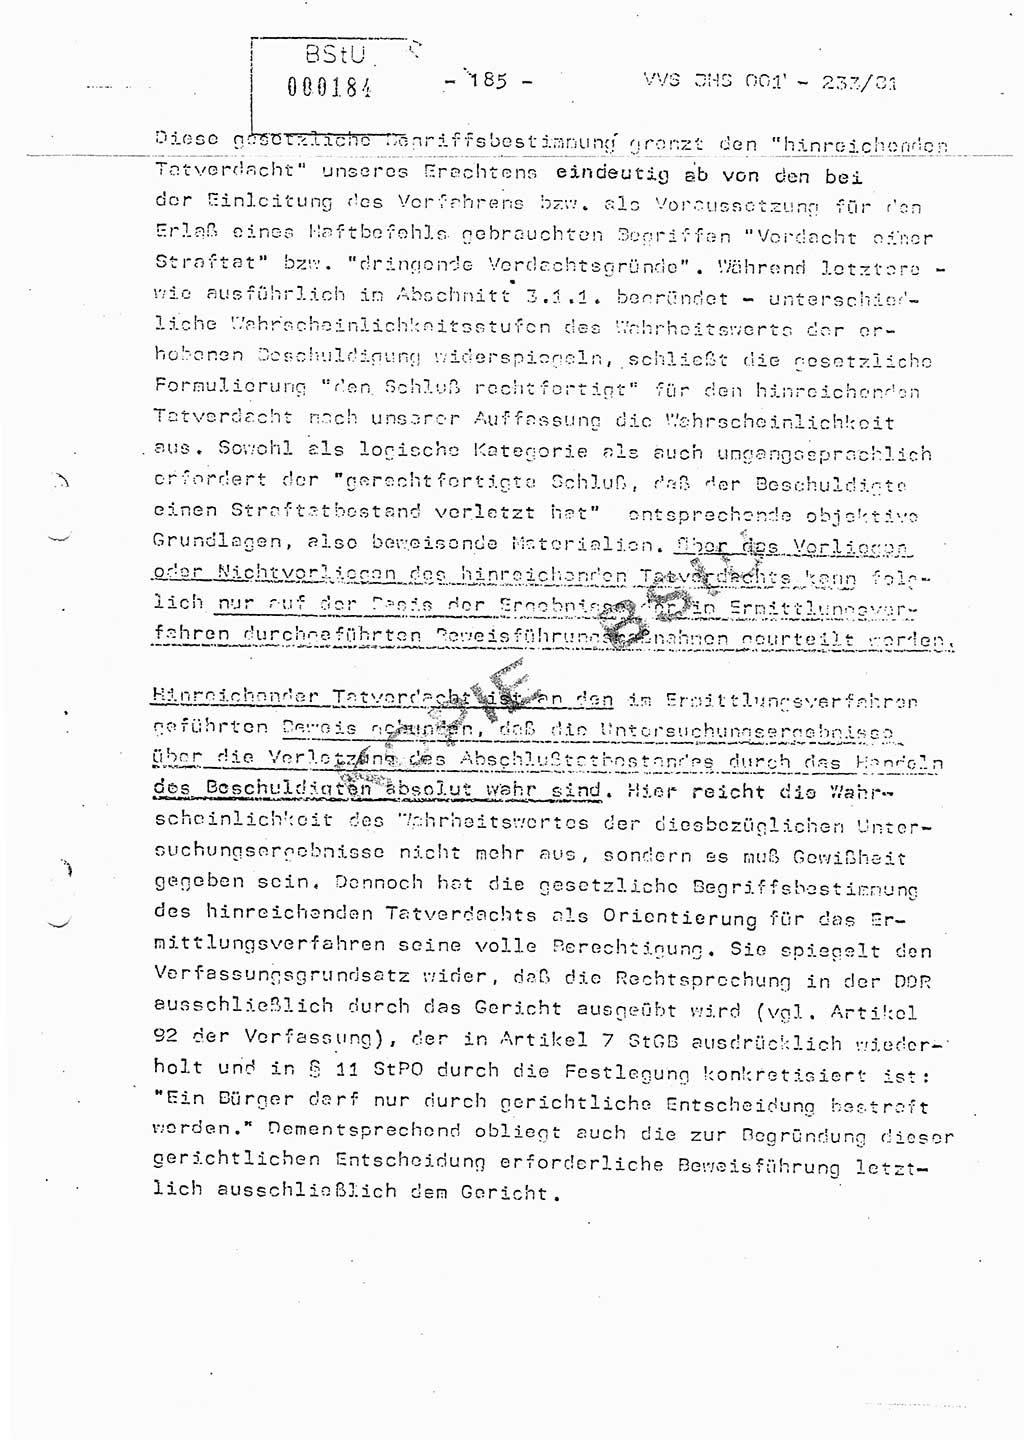 Dissertation Oberstleutnant Horst Zank (JHS), Oberstleutnant Dr. Karl-Heinz Knoblauch (JHS), Oberstleutnant Gustav-Adolf Kowalewski (HA Ⅸ), Oberstleutnant Wolfgang Plötner (HA Ⅸ), Ministerium für Staatssicherheit (MfS) [Deutsche Demokratische Republik (DDR)], Juristische Hochschule (JHS), Vertrauliche Verschlußsache (VVS) o001-233/81, Potsdam 1981, Blatt 185 (Diss. MfS DDR JHS VVS o001-233/81 1981, Bl. 185)